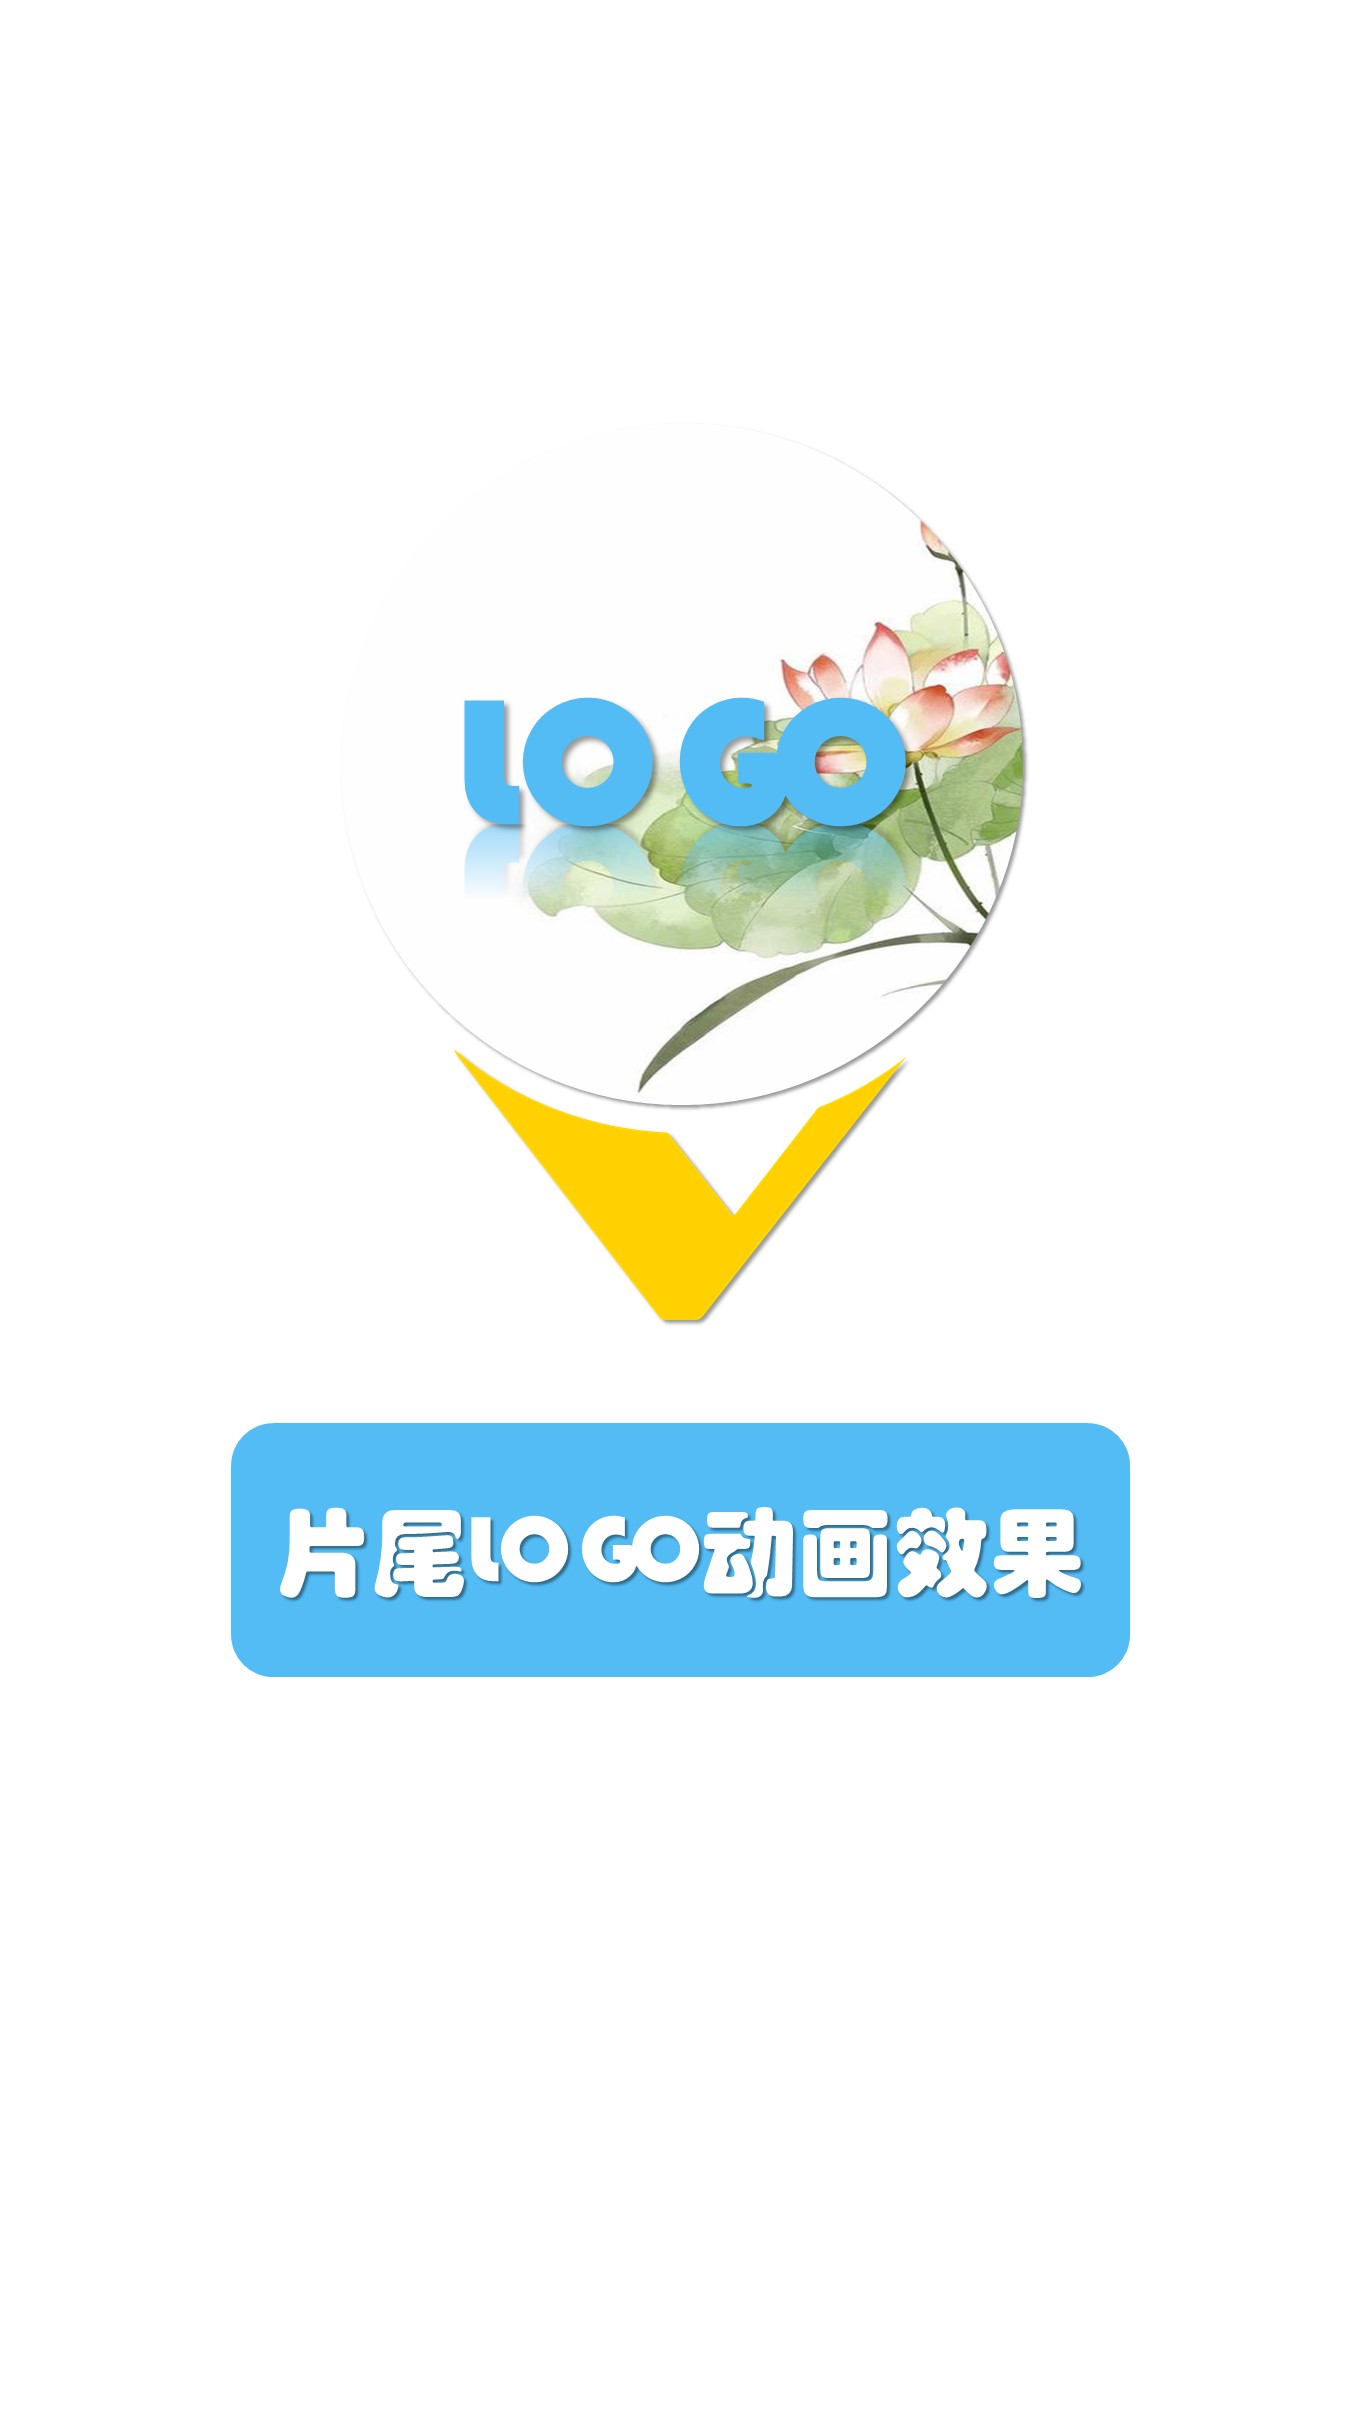 0-3清新蓝片头片尾封面LOGO动画竖版 (9).JPG